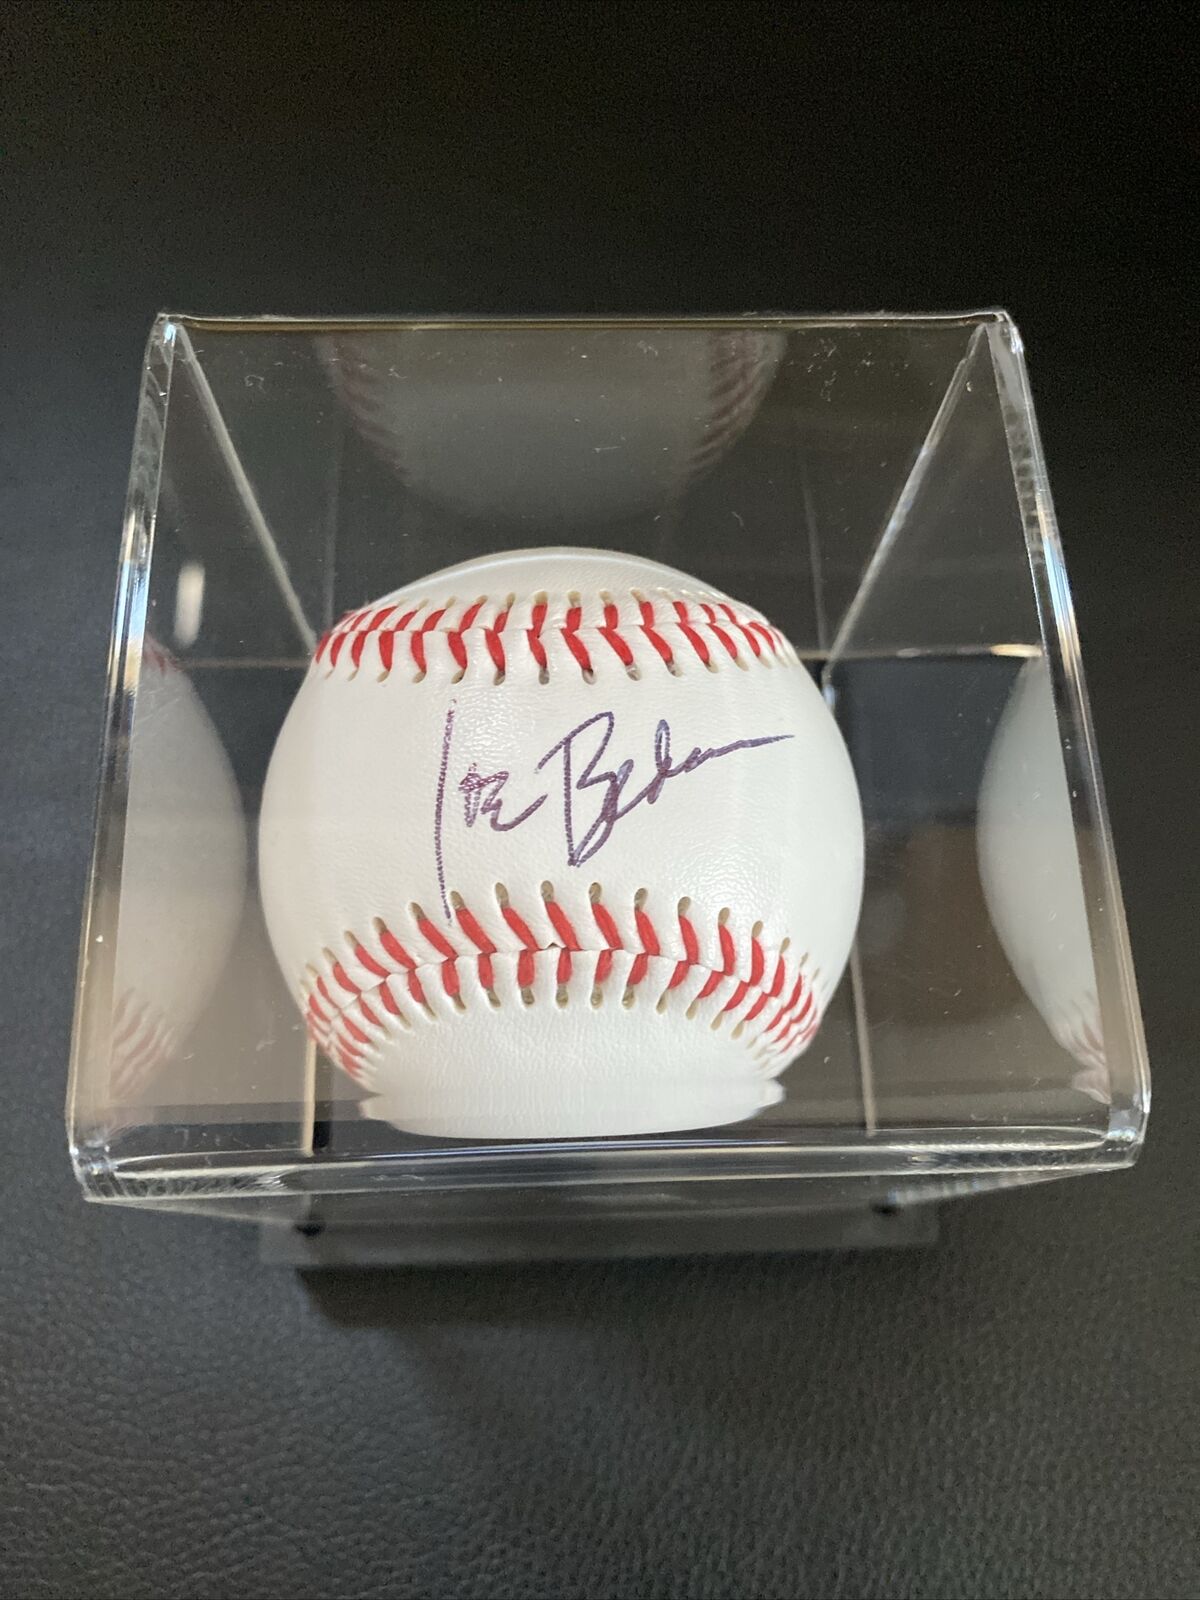 Joe Biden Autographed Baseball Coa